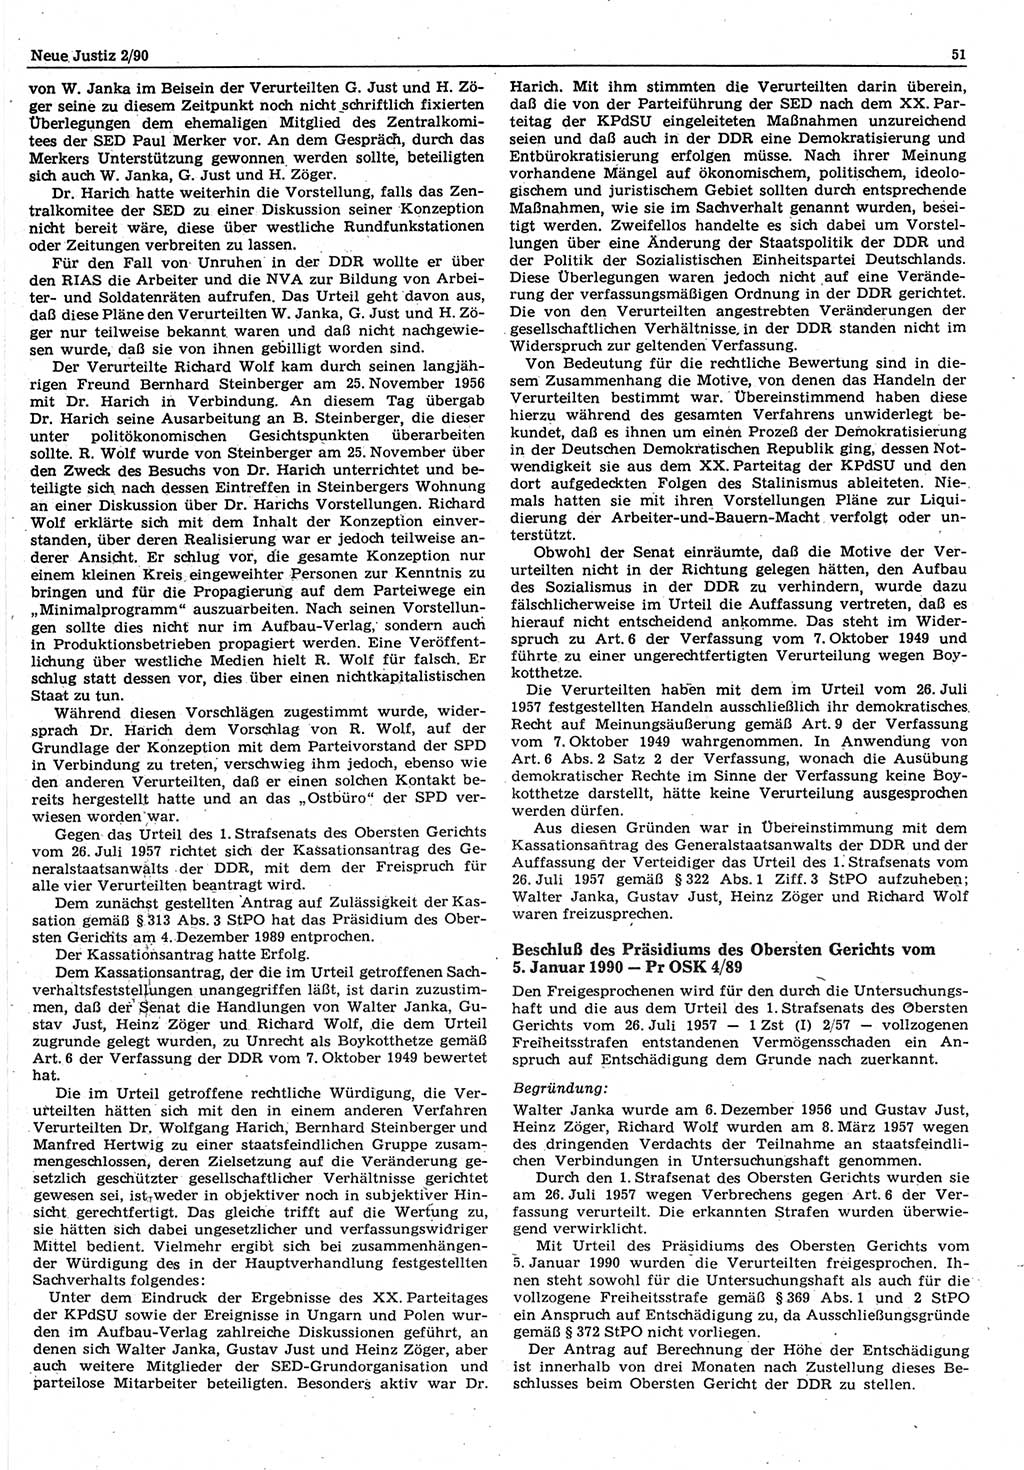 Neue Justiz (NJ), Zeitschrift für Rechtsetzung und Rechtsanwendung [Deutsche Demokratische Republik (DDR)], 44. Jahrgang 1990, Seite 51 (NJ DDR 1990, S. 51)